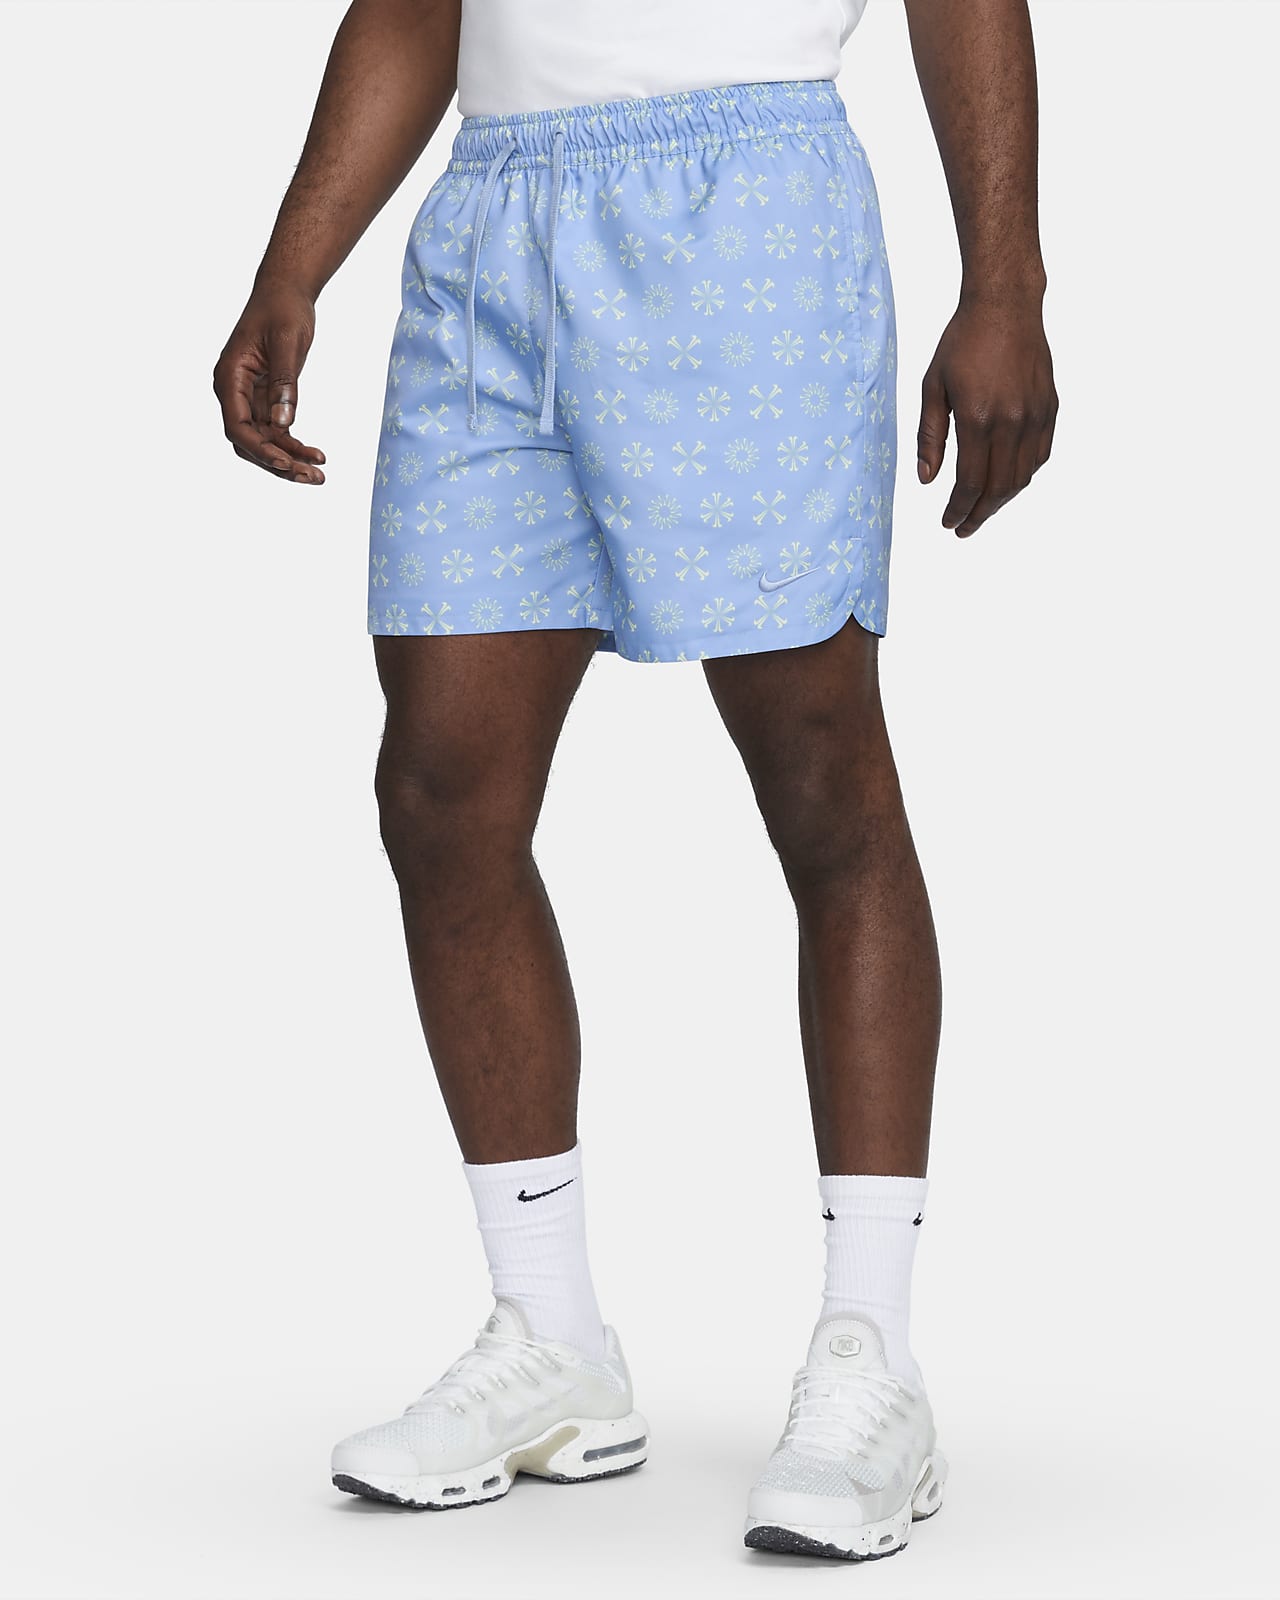 Nike Sportswear Men's Woven Lined Flow Shorts.